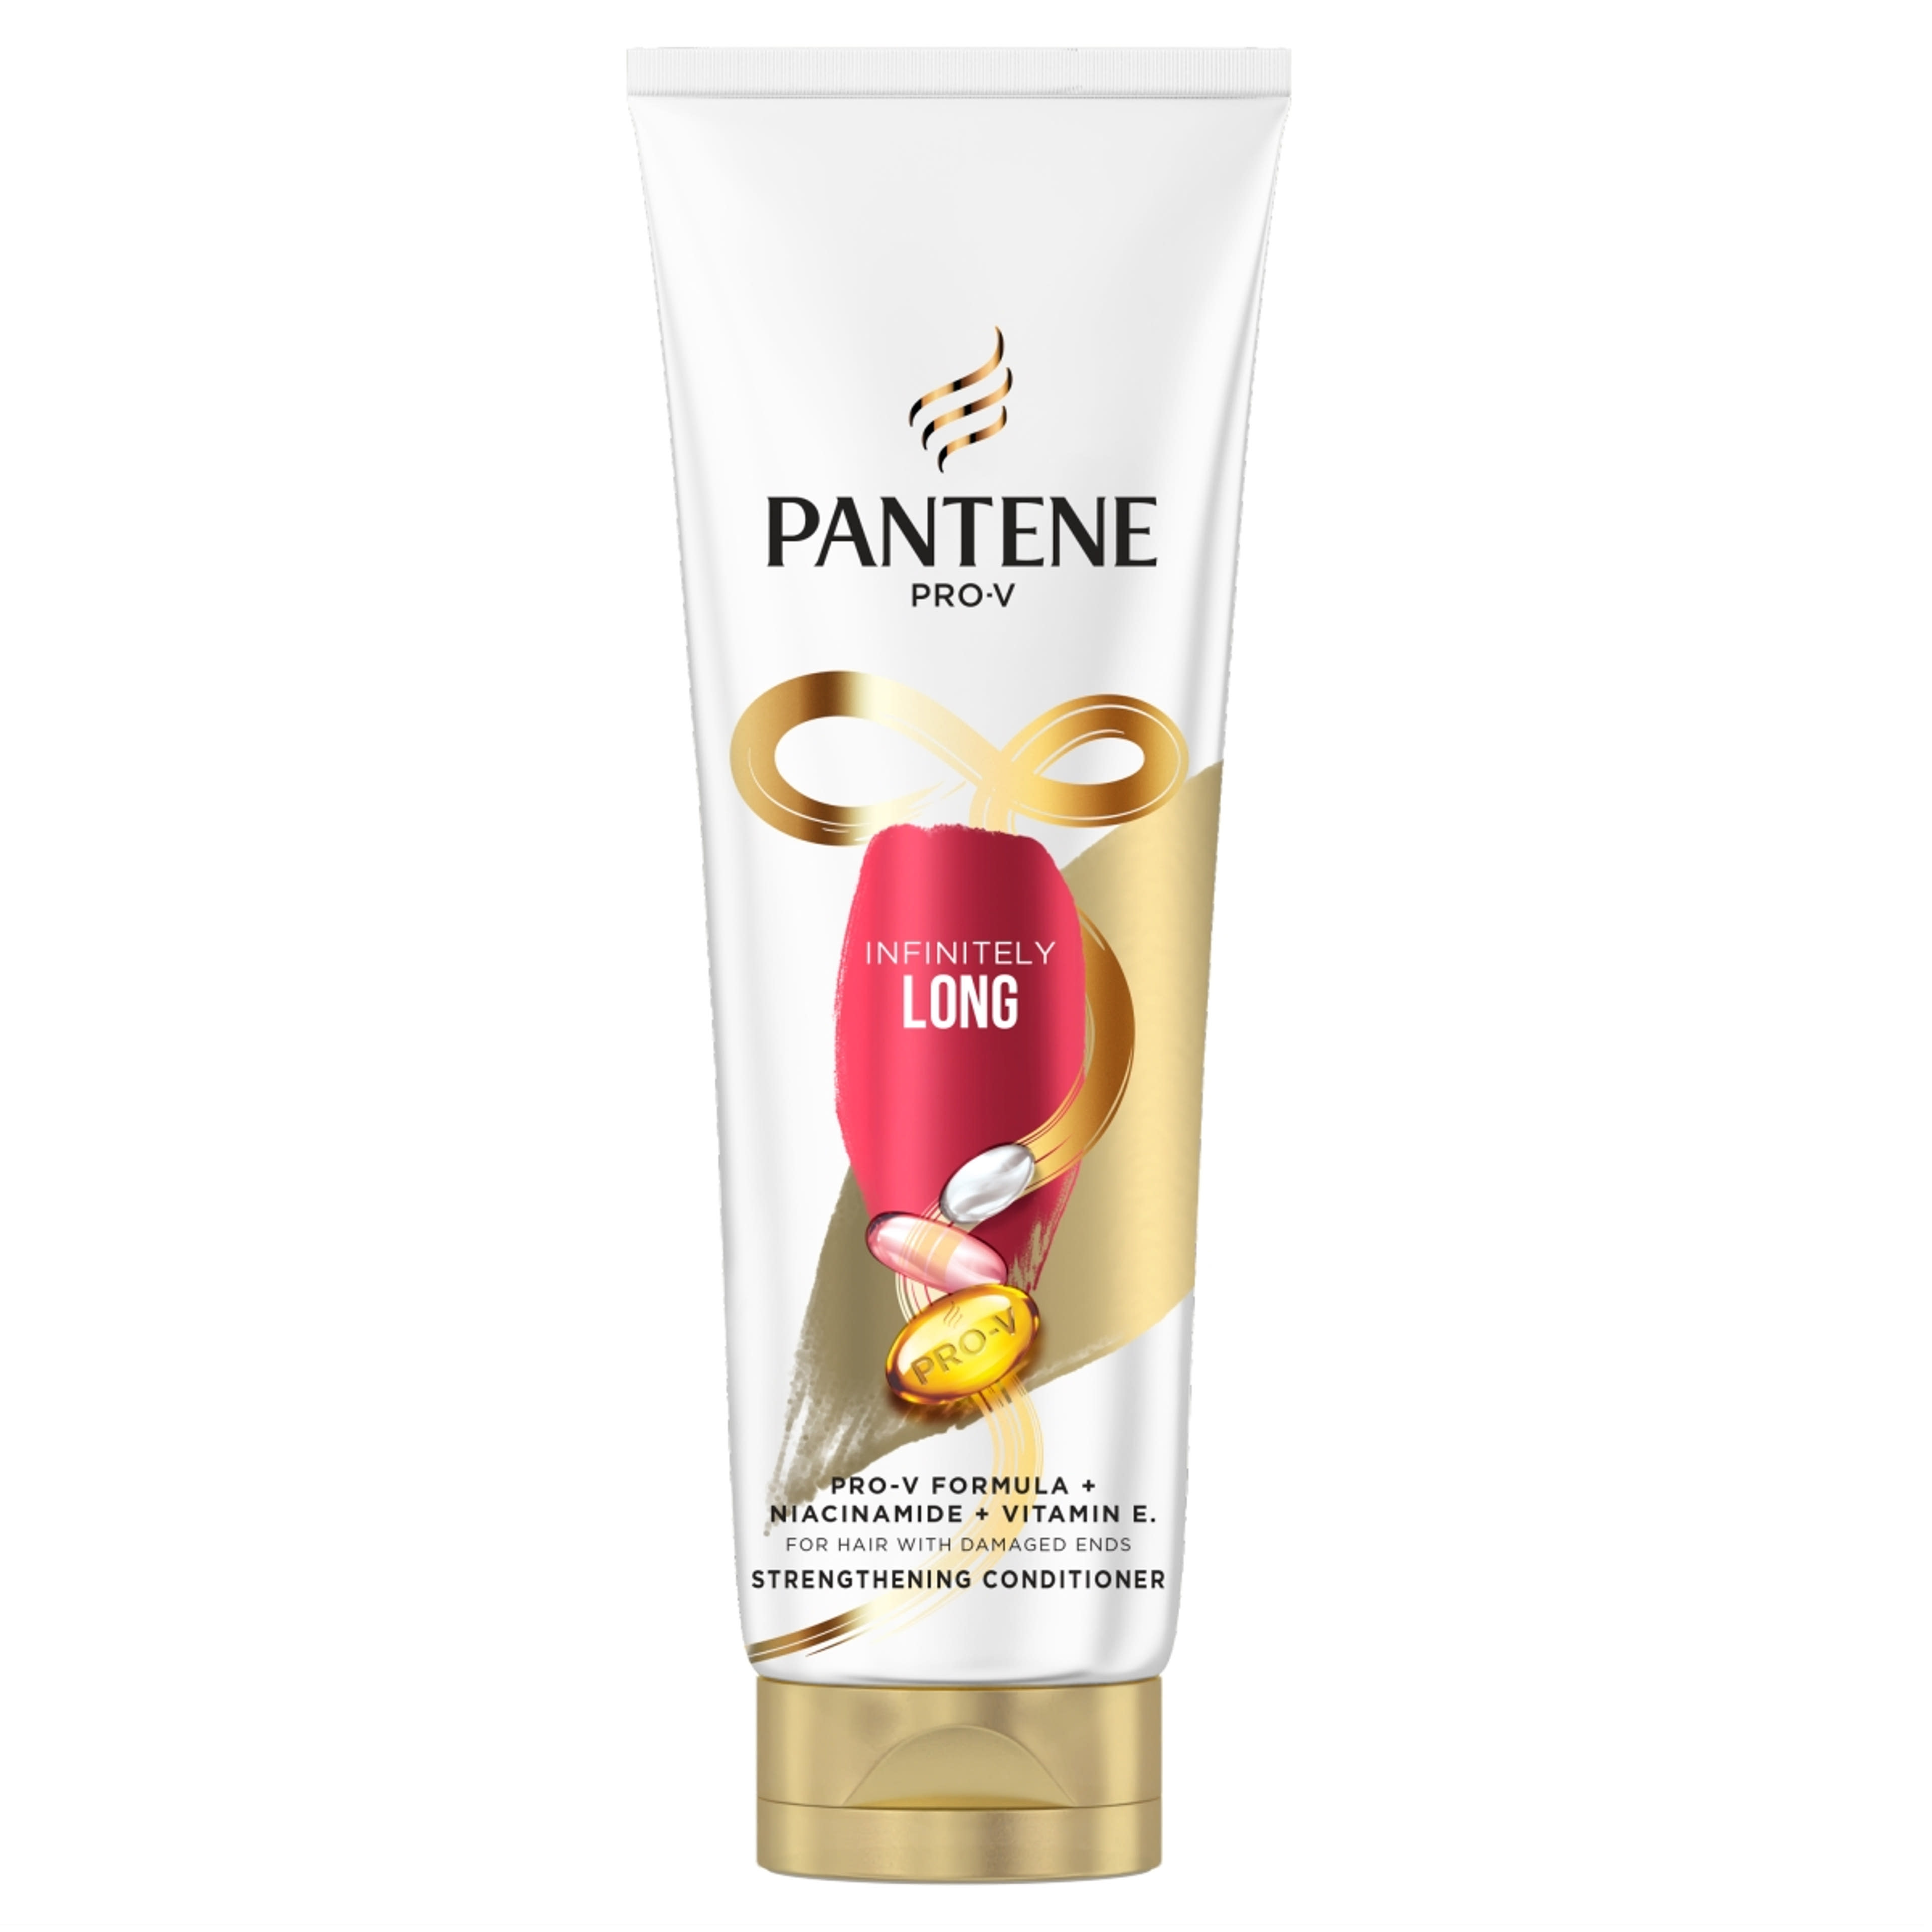 Pantene Pro-V Infinitely Long balzsam - 200 ml-1